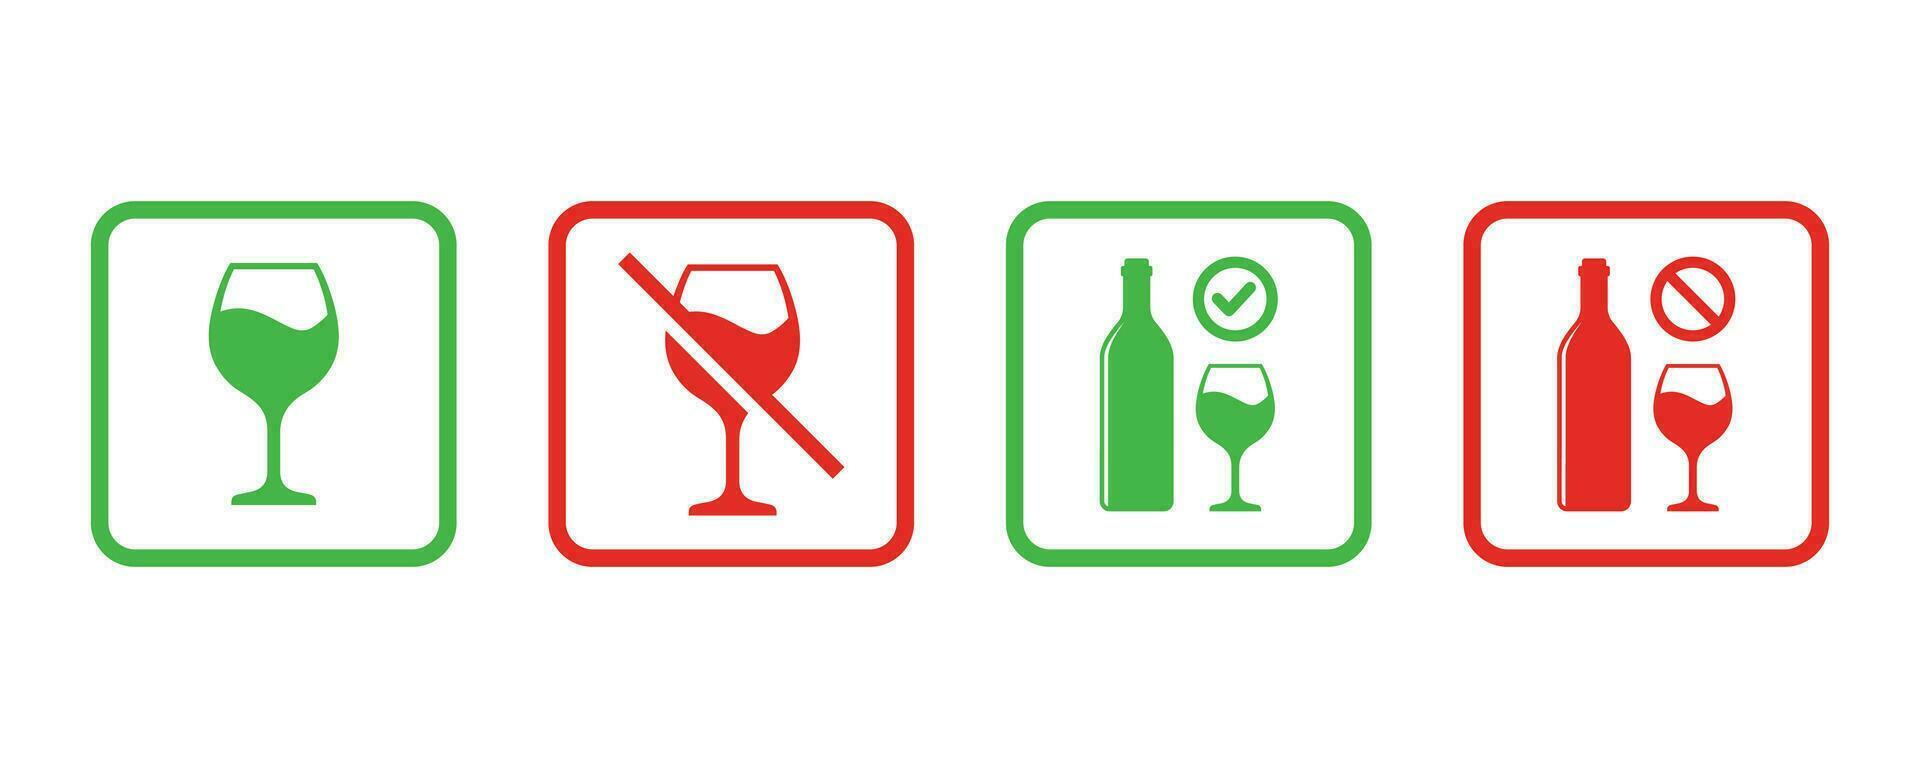 Nej alkohol tecken och alkohol tillåten tecken symbol vektor illustration. förbud tecken uppsättning för alkohol. vektor illustration